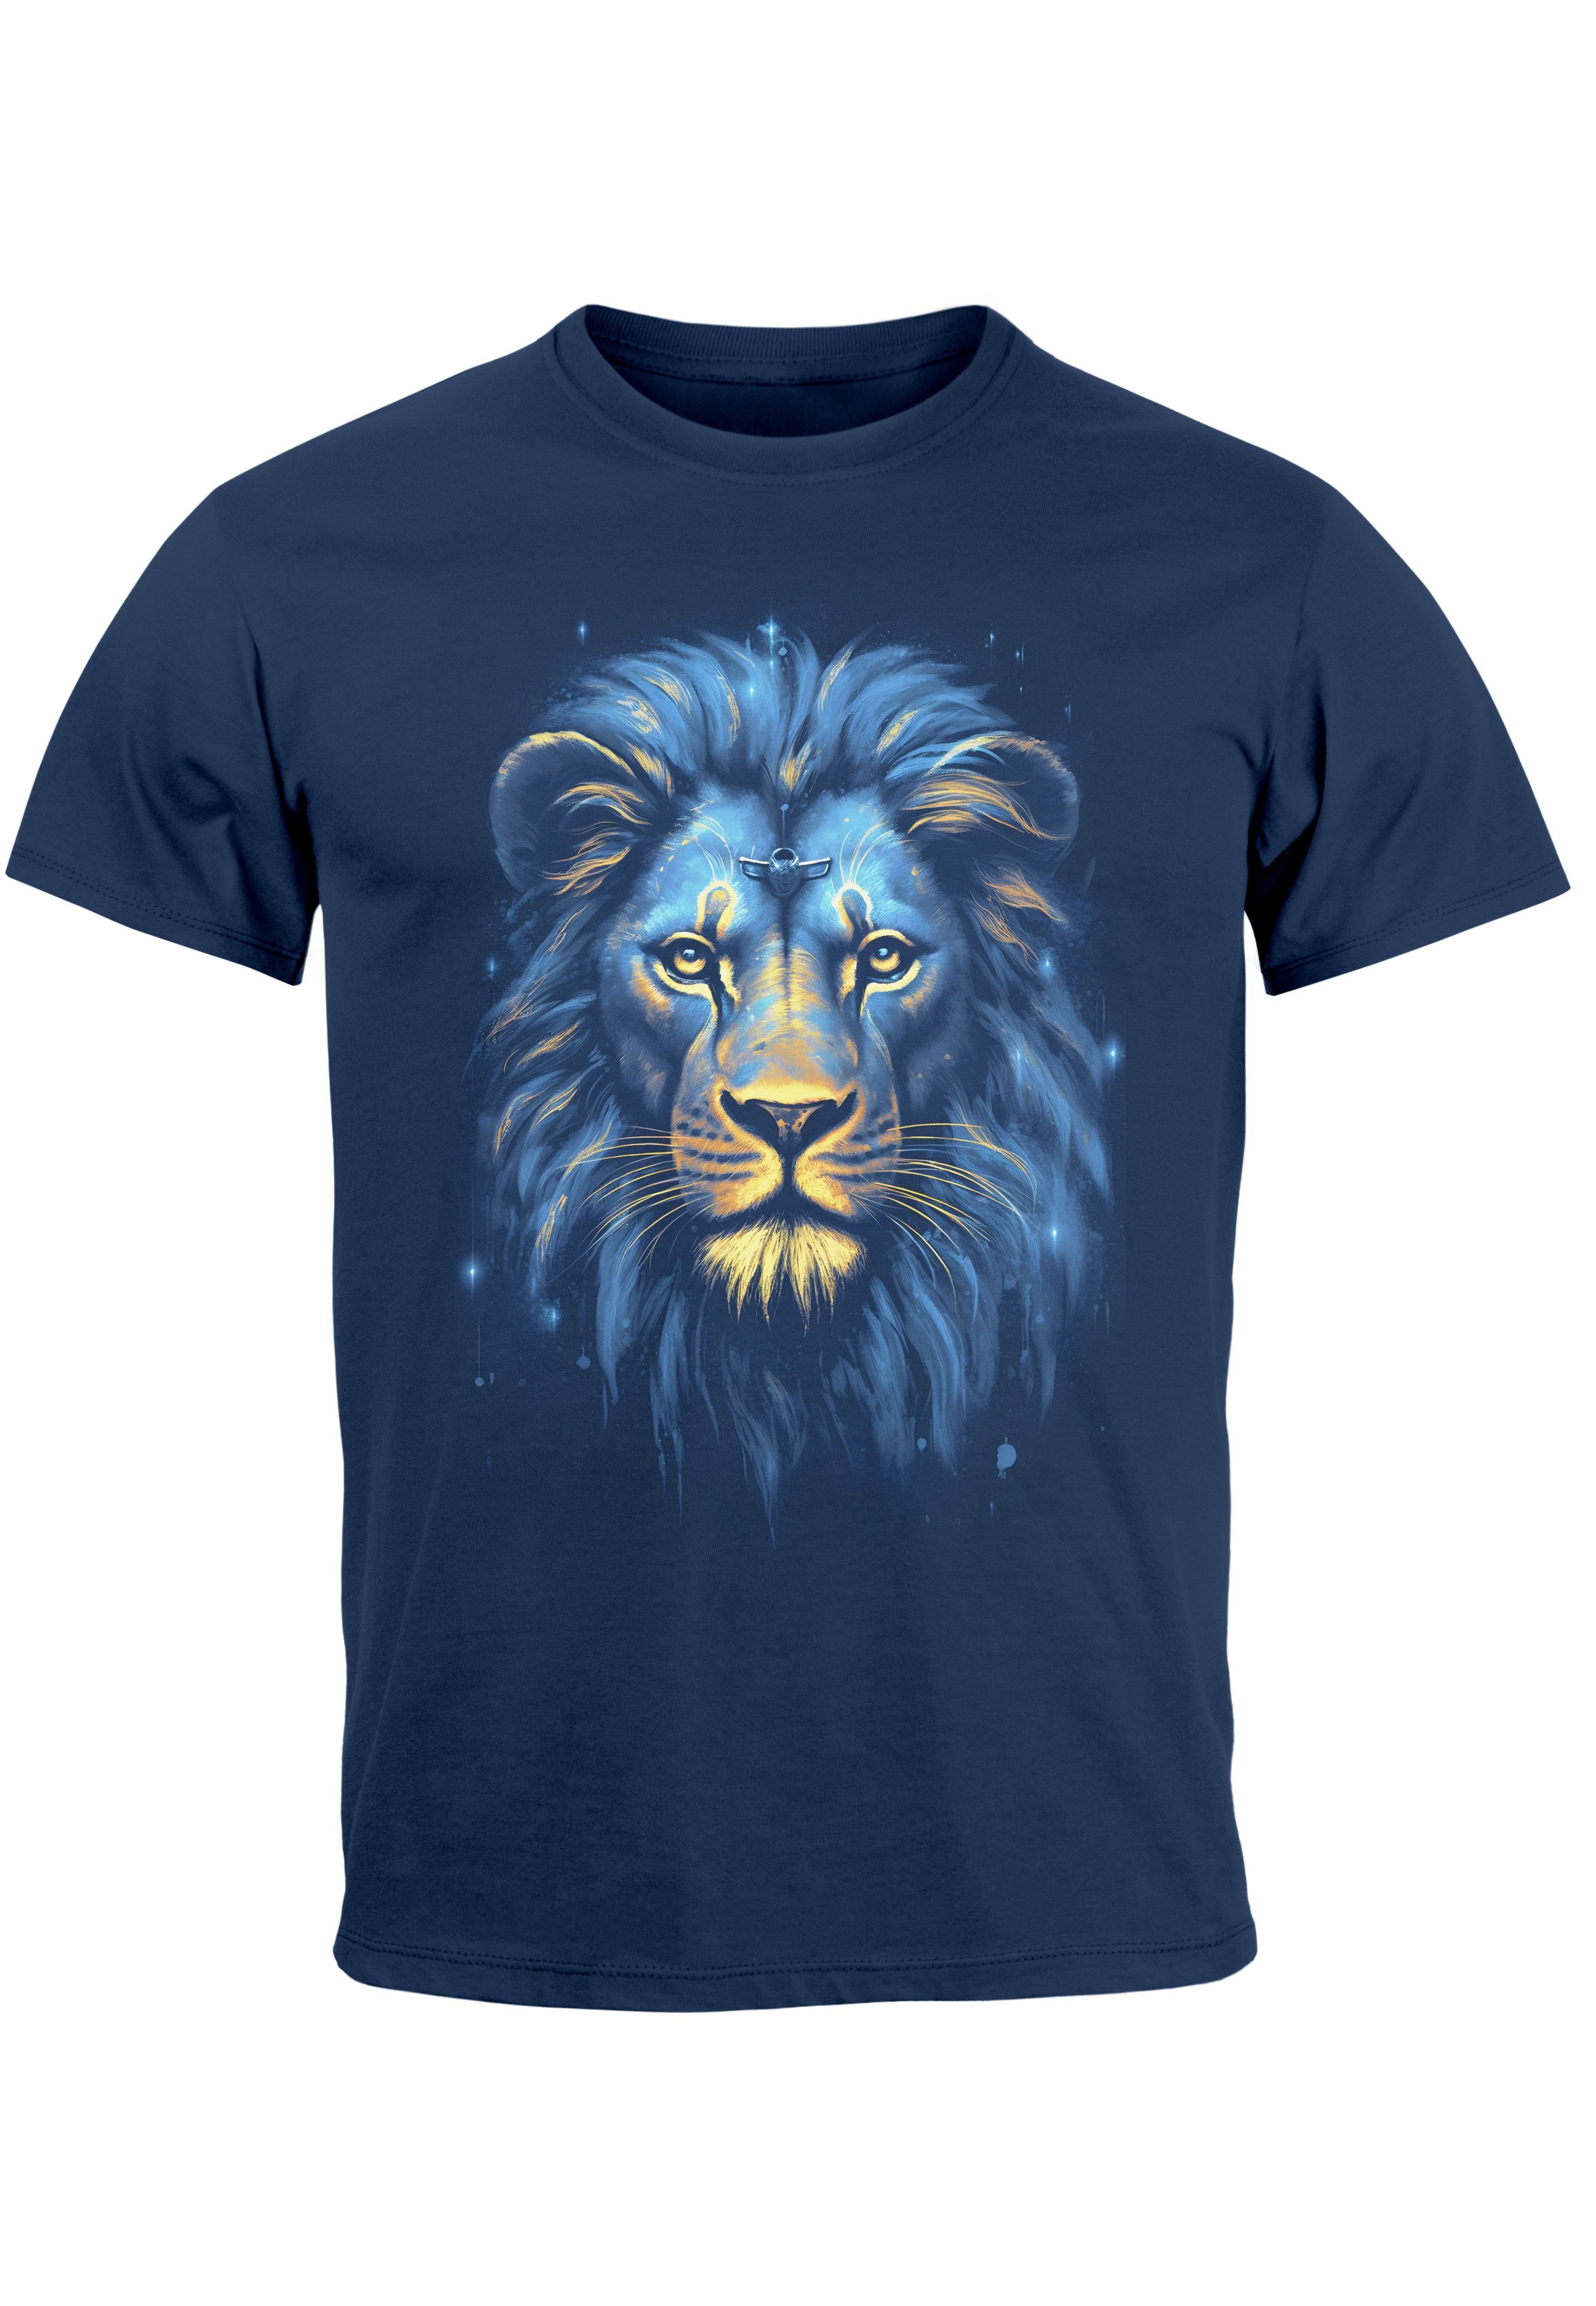 Printsh T-Shirt mit Löwe Lion Neverless Print-Shirt Aufdruck Herren navy Kunst Illustration Art-Print Print